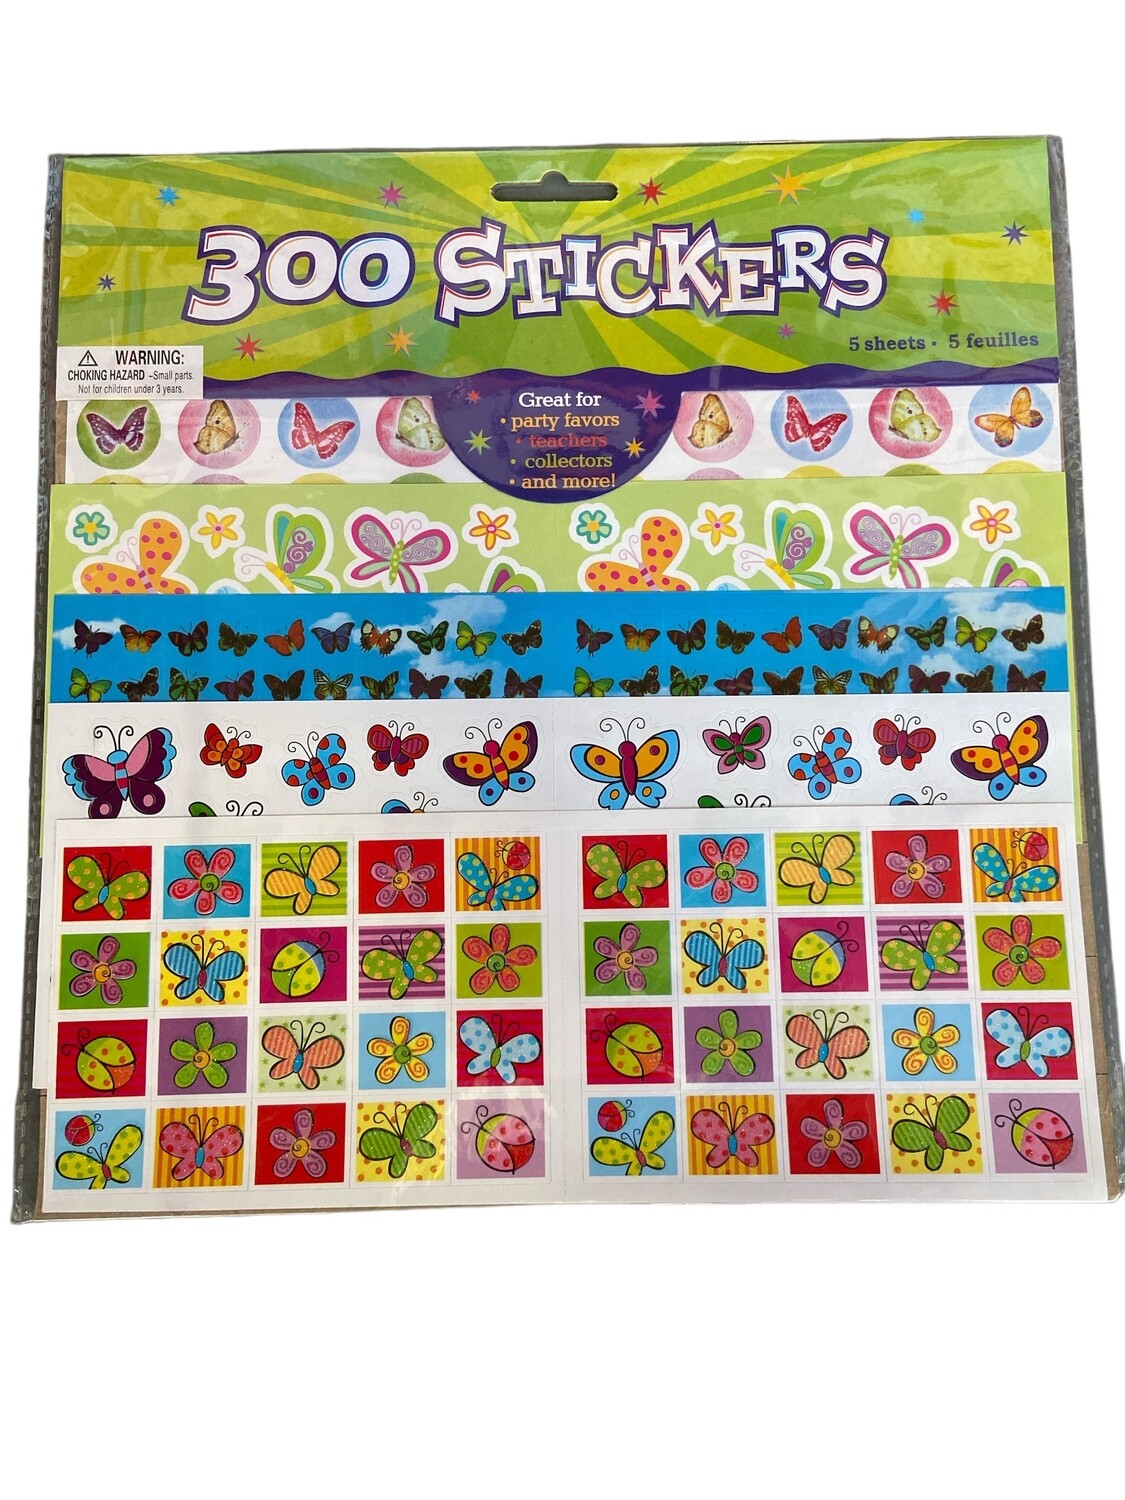 300 STICKERS - BUTTERFLIES